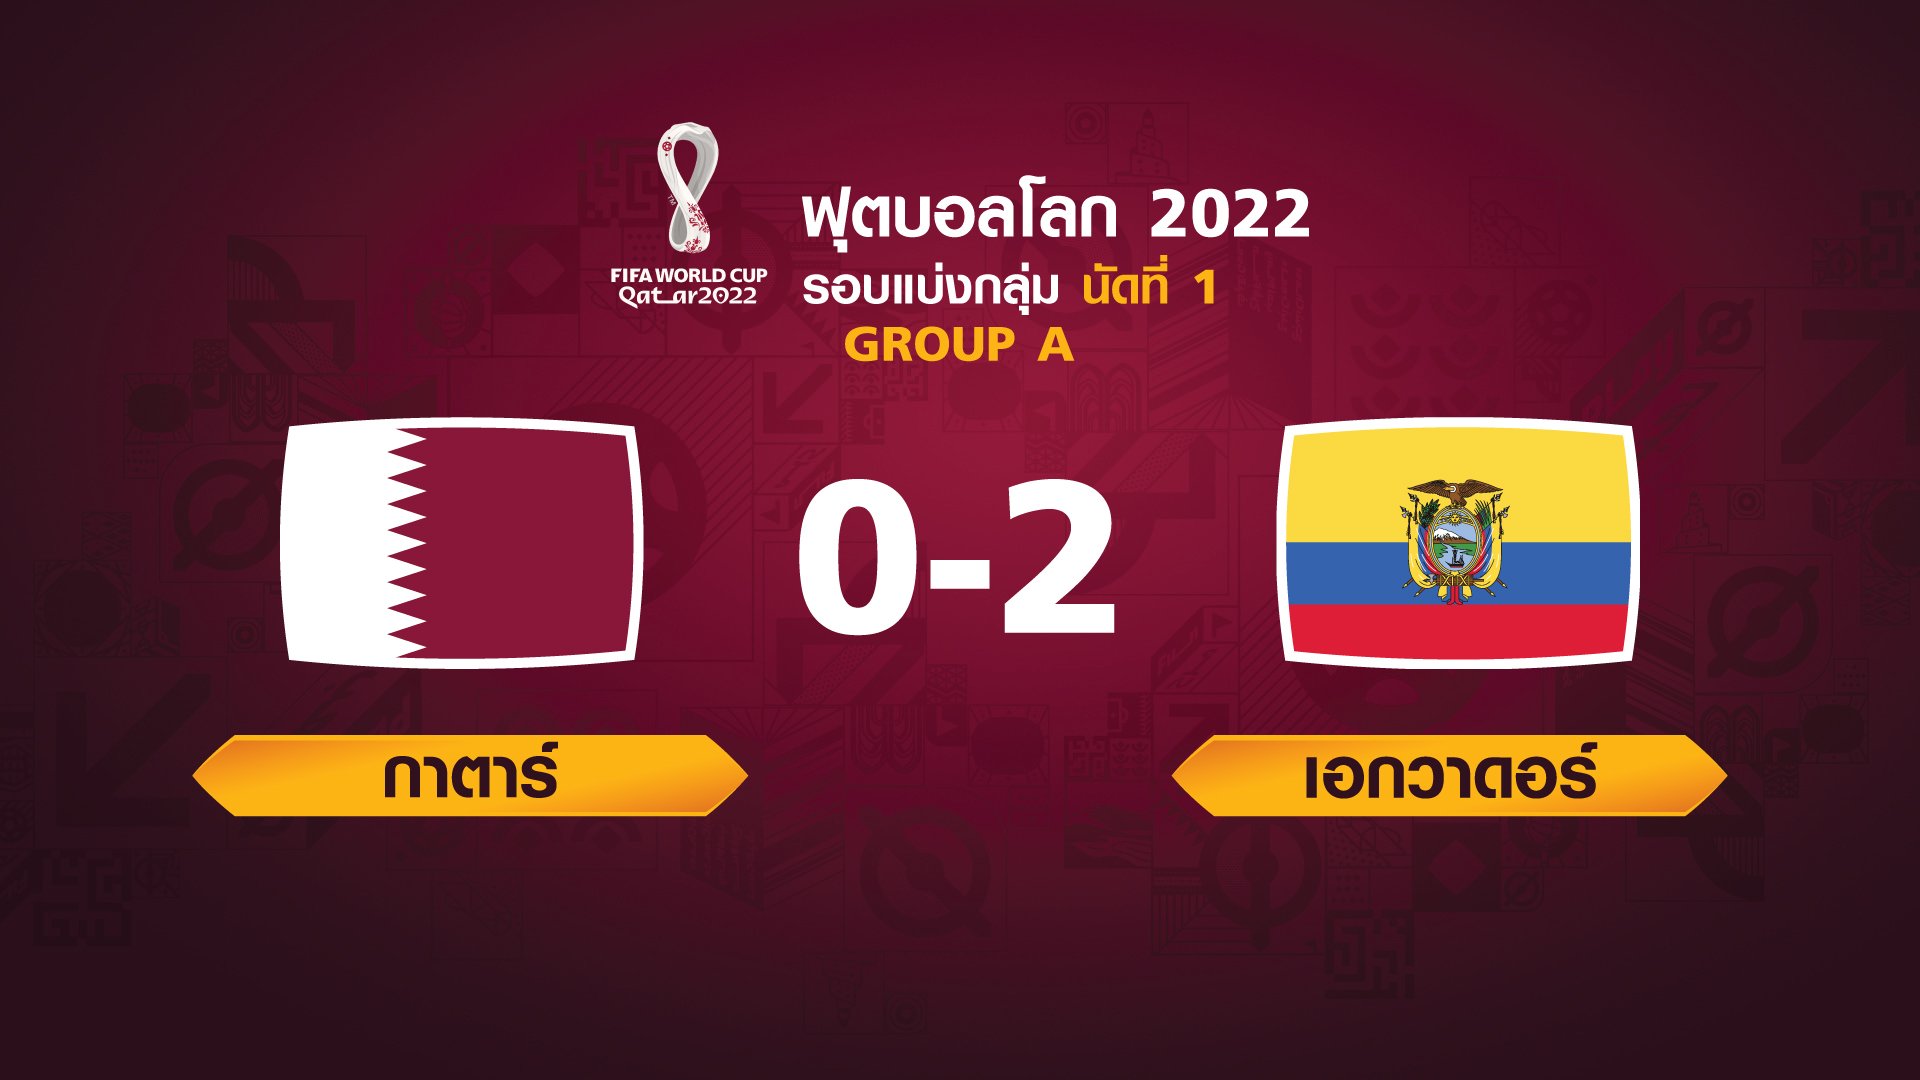 ฟุตบอลโลก 2022 รอบแบ่งกลุ่ม นัดแรก ระหว่าง Qatar vs Ecuador